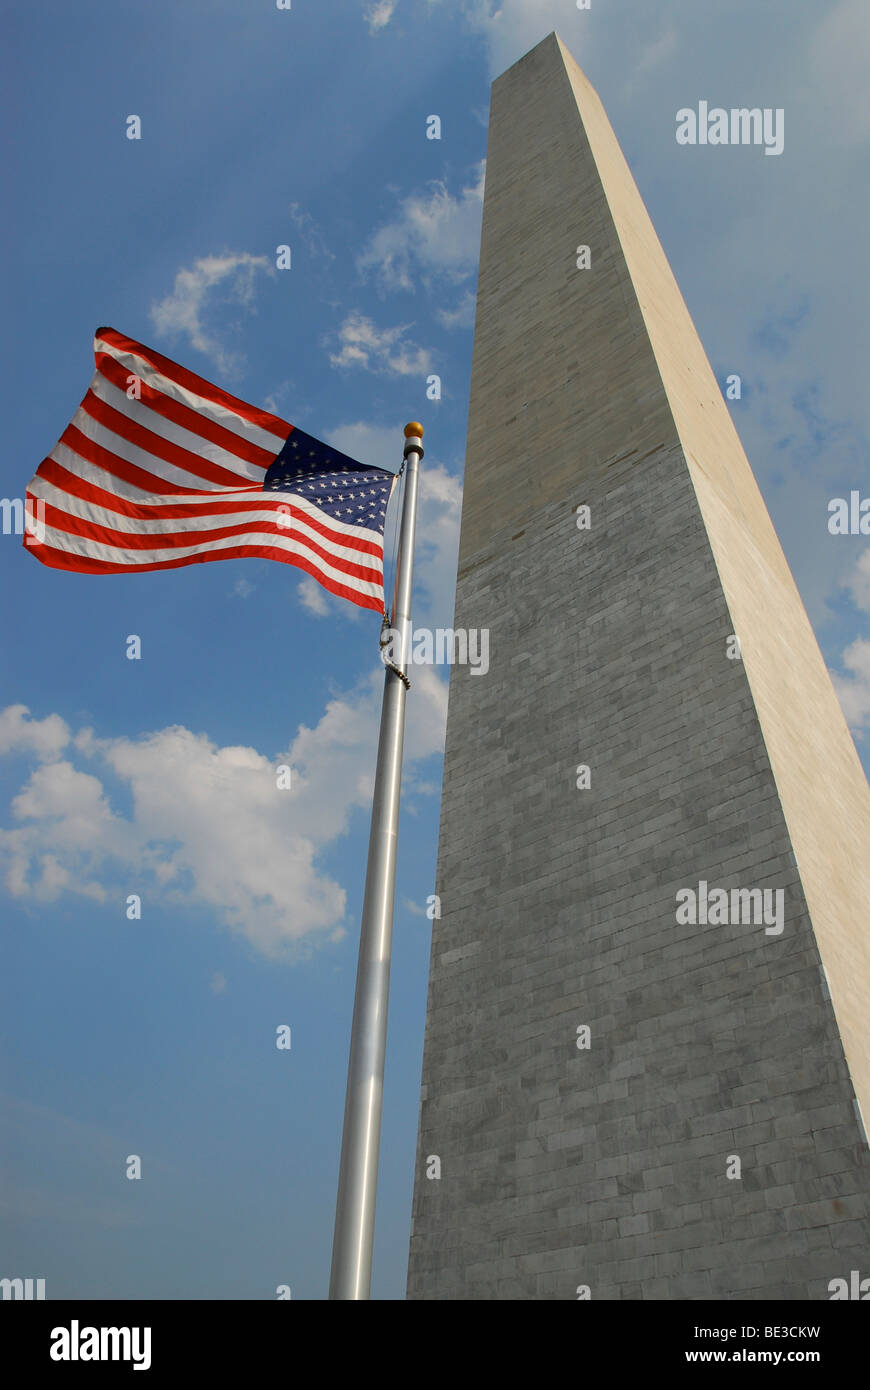 Stars and Stripes, le drapeau américain et le Monument de Washington, Washington DC, USA, Amérique du Nord Banque D'Images